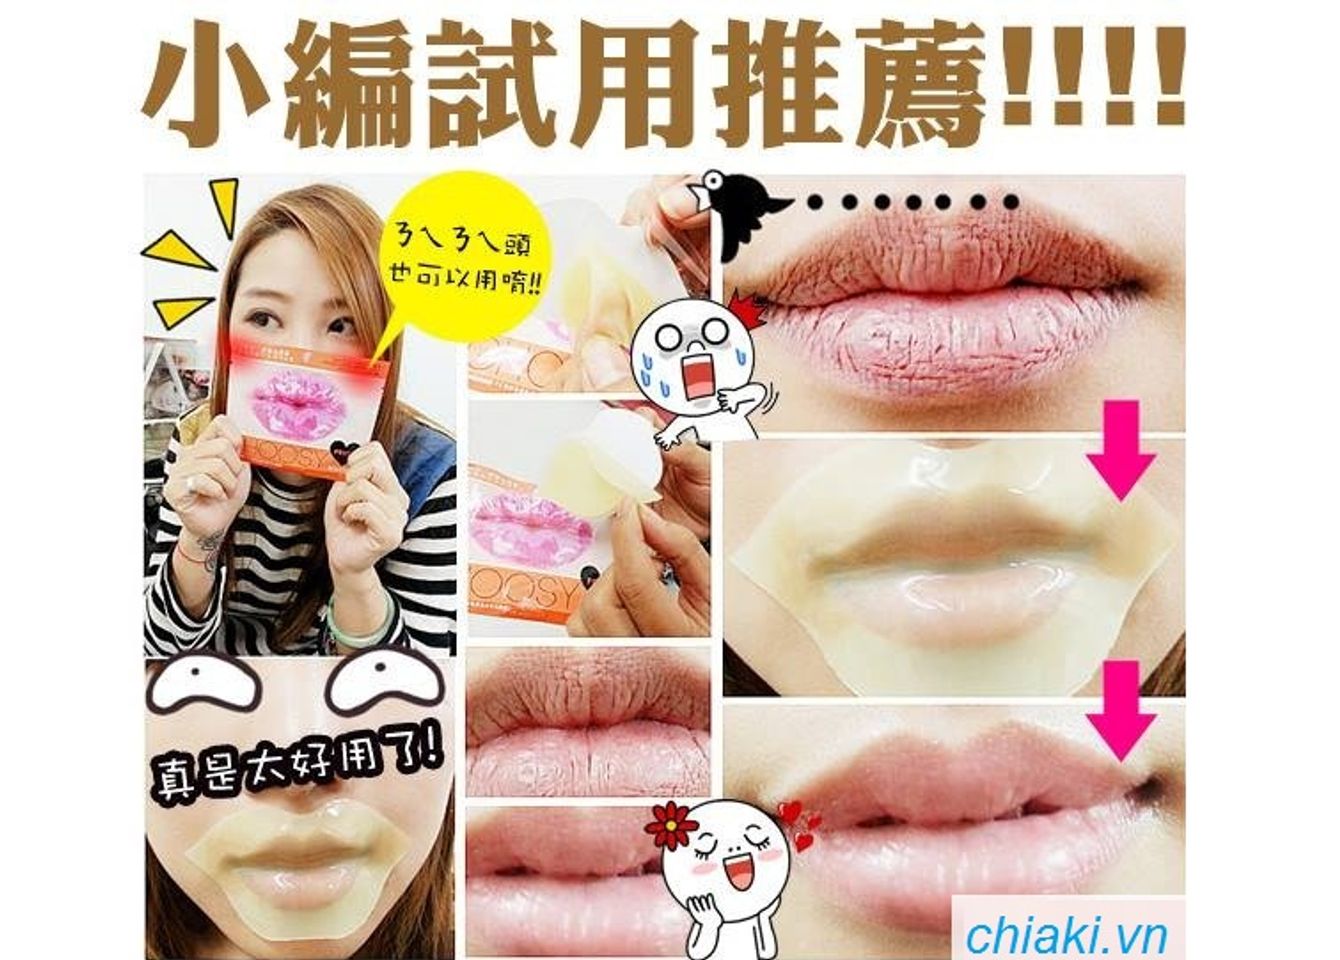 Mặt nạ môi Choosy Nhật bản dạng gel, dễ dàng thẩm thấu sâu qua da, ngấm vào bên trong, làm ẩm, căng mịn làn môi, giảm hiện tượng thâm sạm